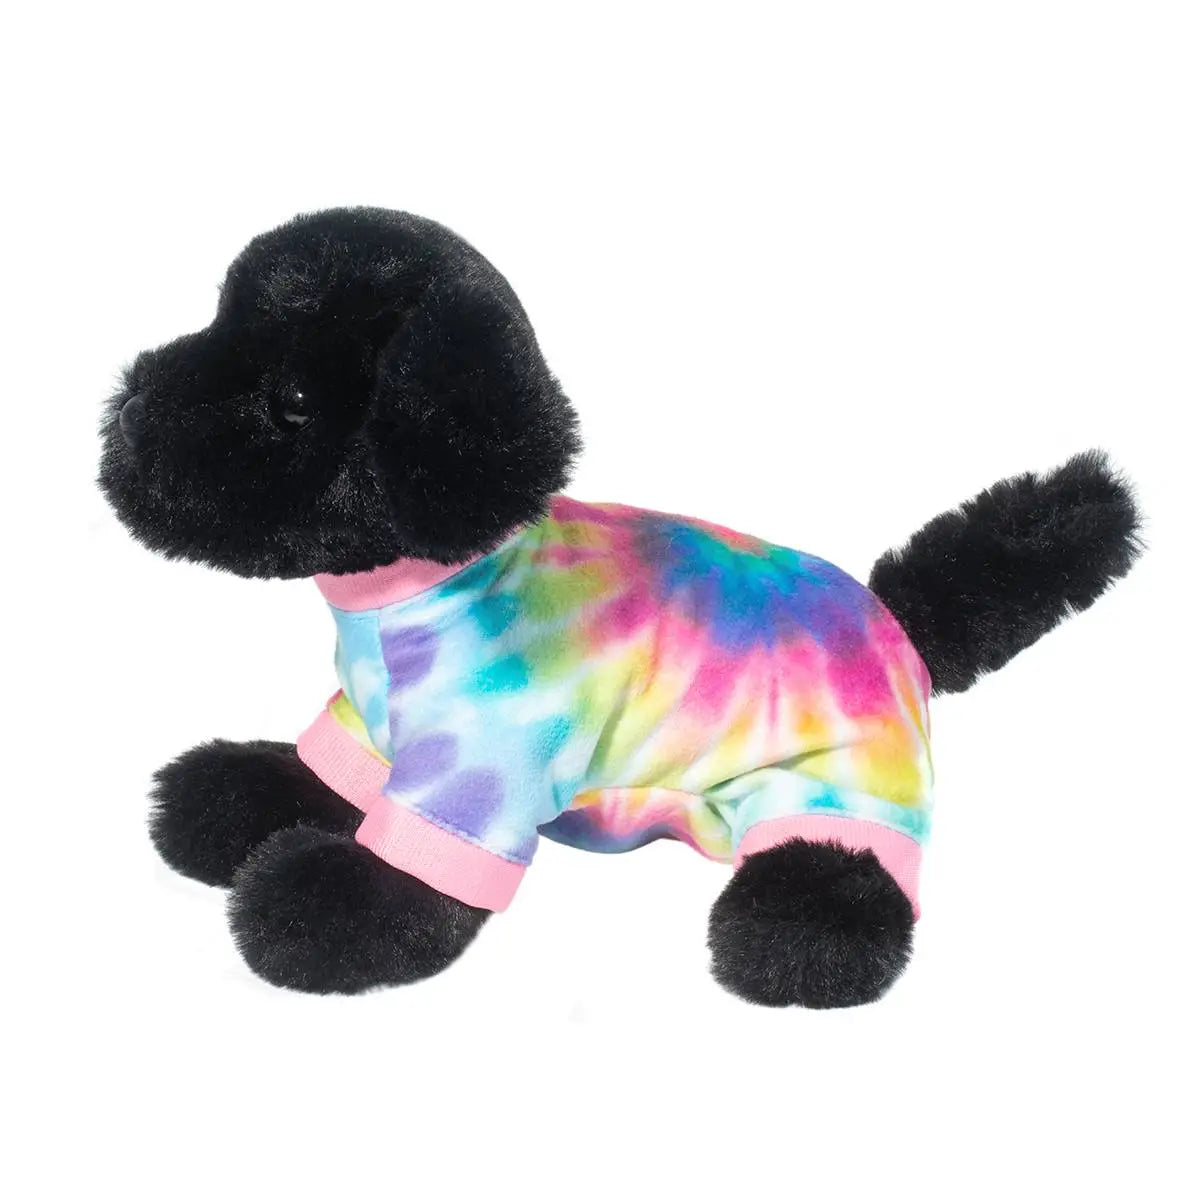 Stuffed Animal - Hattie Black Lab PJ Pup